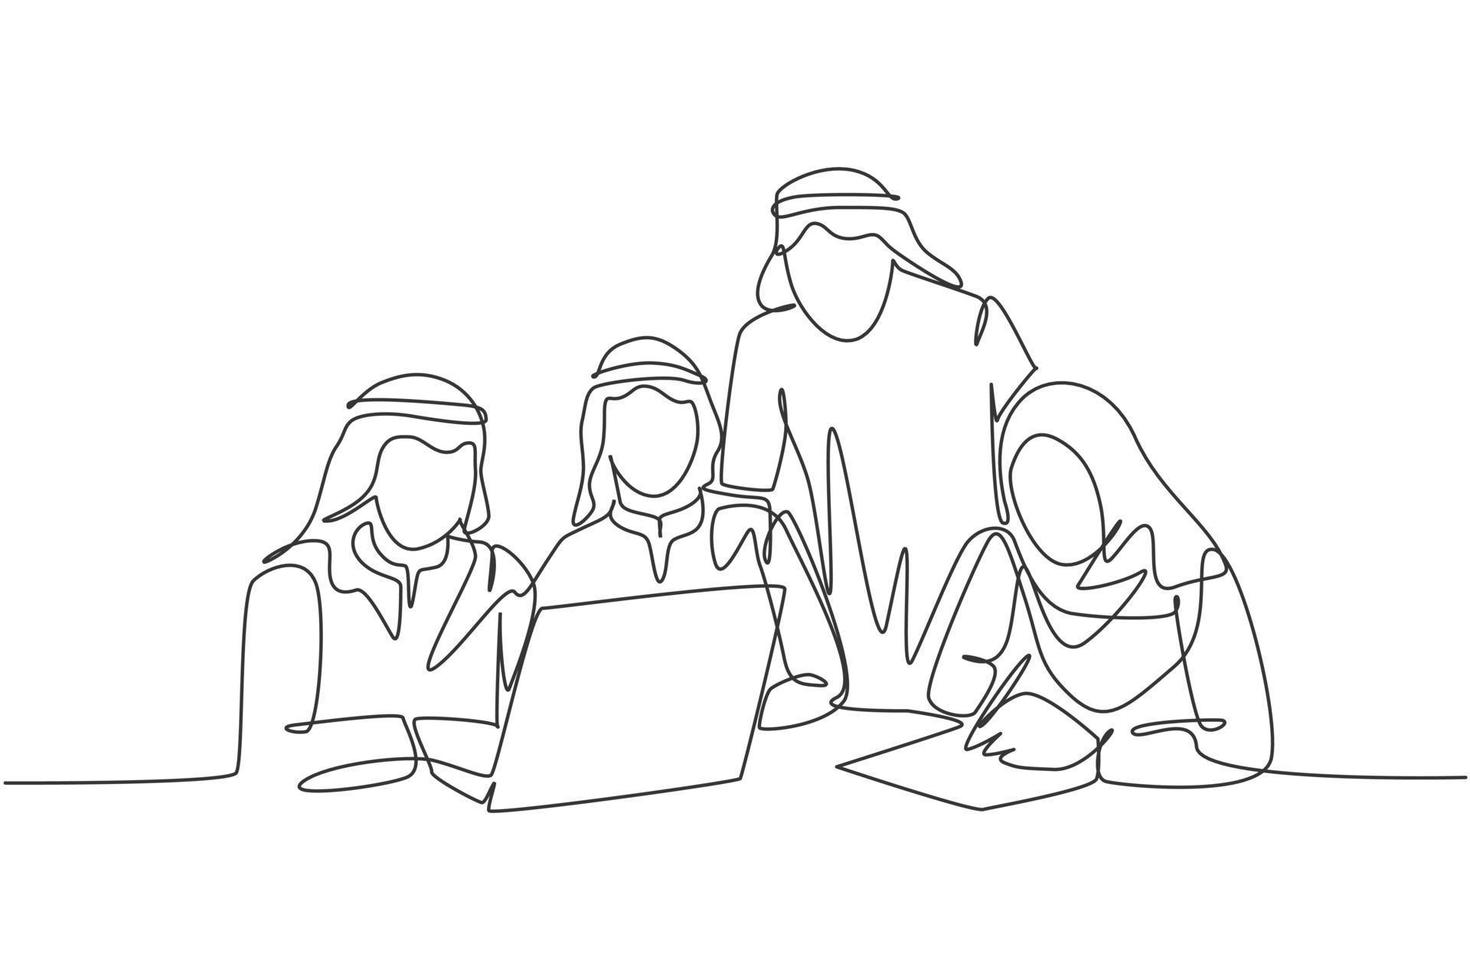 un disegno a tratteggio continuo di giovani membri del team di avvio musulmano che discutono seriamente della strategia di marketing. abbigliamento islamico shemag, kandura, sciarpa hijab, velo. illustrazione vettoriale di disegno a linea singola